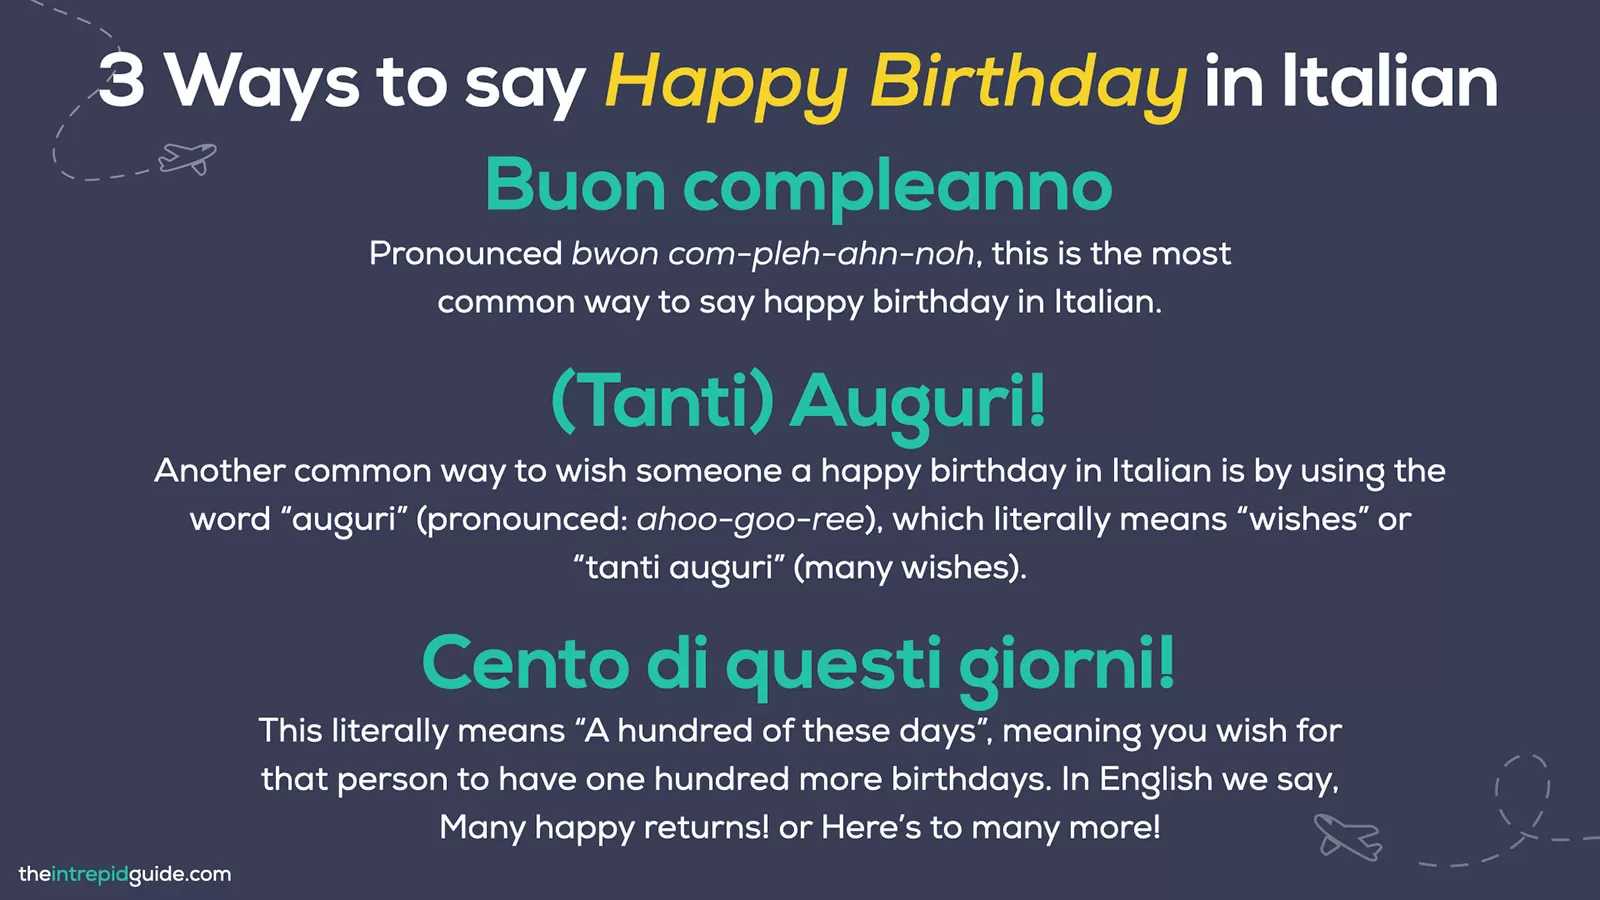 3 Ways to say Happy Birthday in Italian